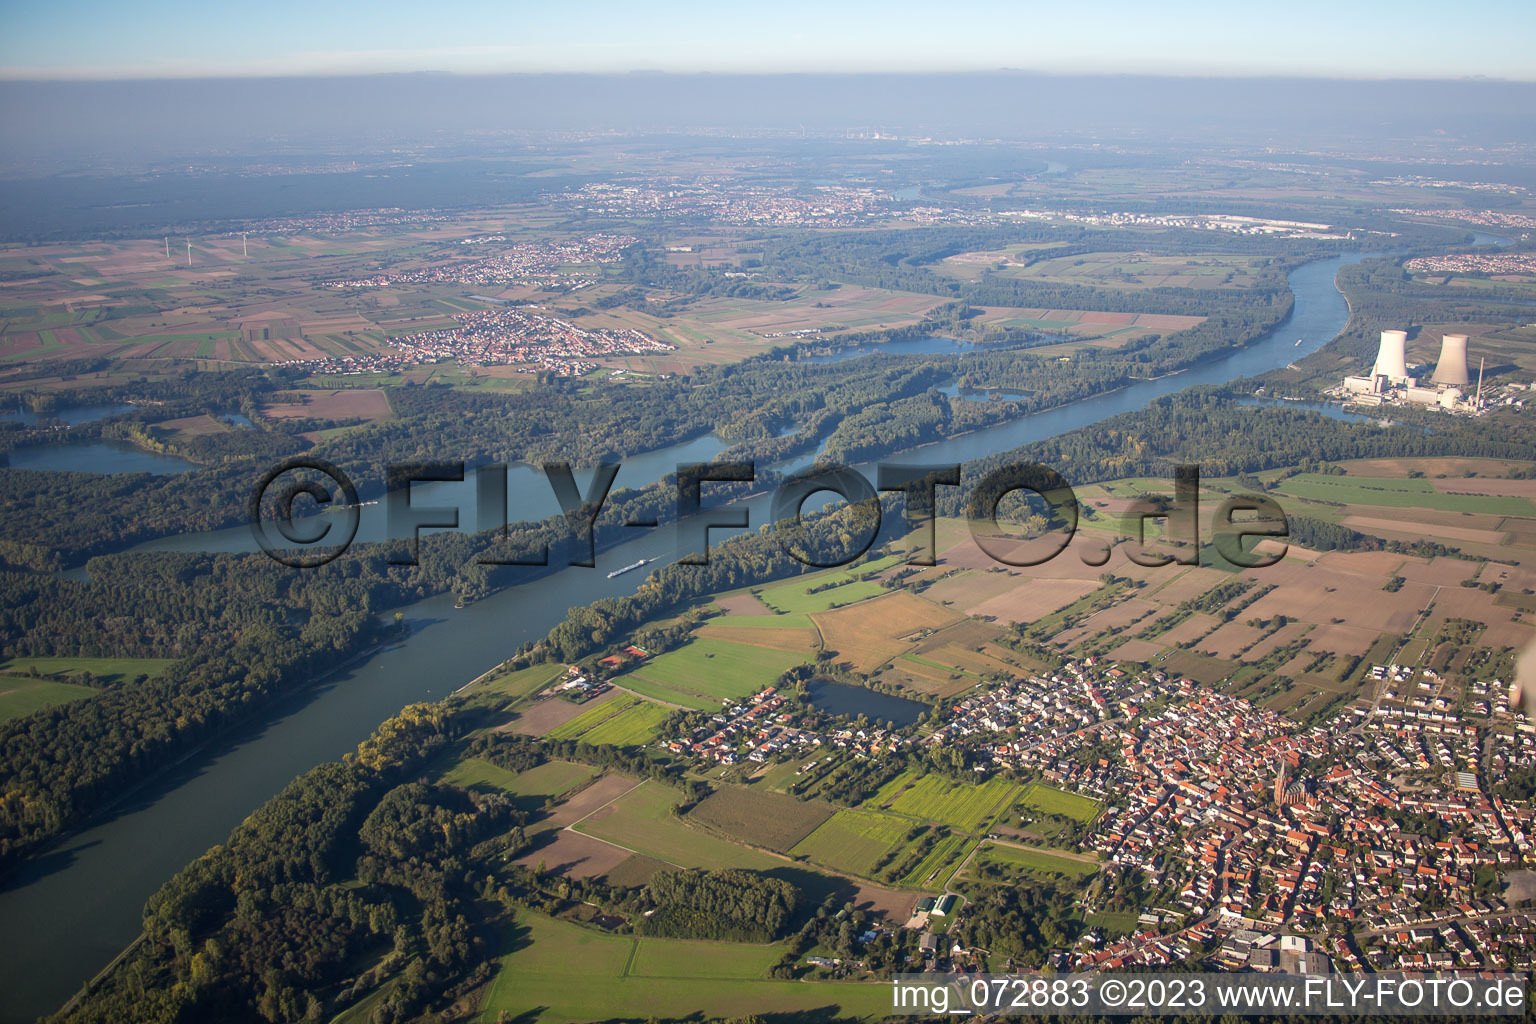 Luftbild von Ortsteil Rheinsheim in Philippsburg im Bundesland Baden-Württemberg, Deutschland